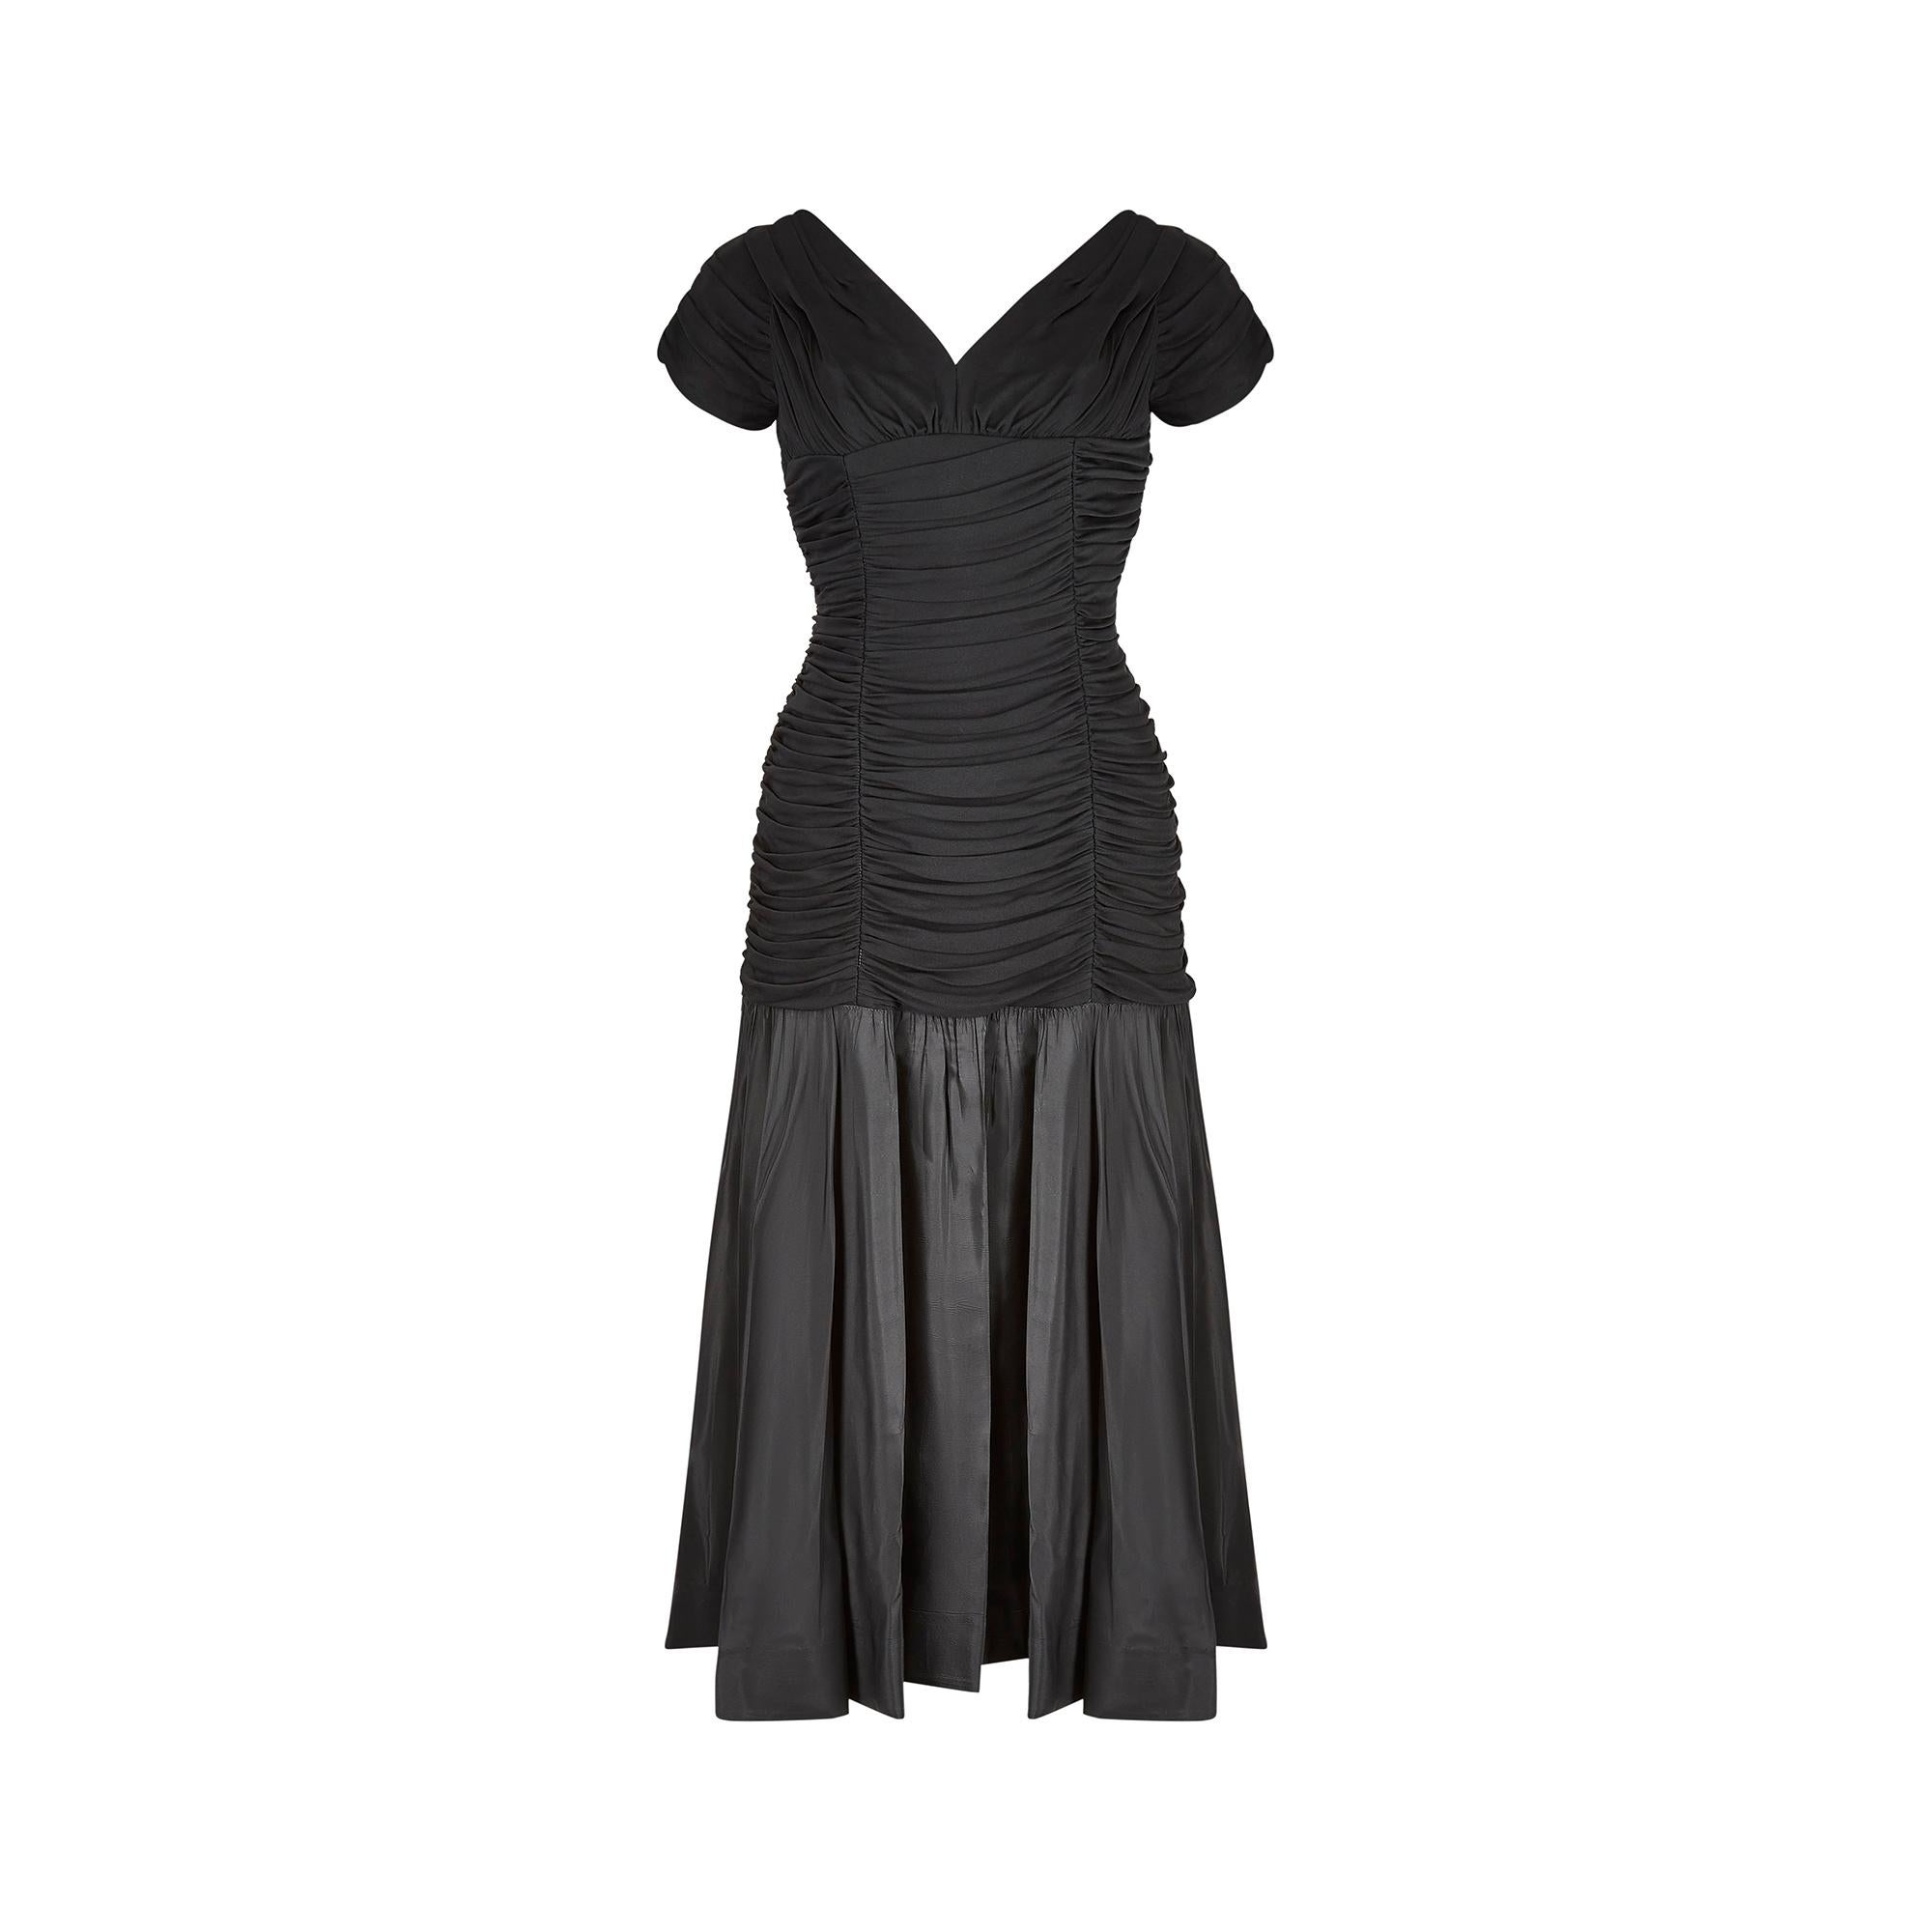 Dieses Kleid aus Taft und Seide von Ceil Chapman aus den frühen 1950er Jahren ist ein zeitloses und elegantes Partykleid. Es hat ein tailliertes, gerüschtes Mieder aus weichem, schwarzem Seidenjersey, das sich wunderbar an den Körper anschmiegt und